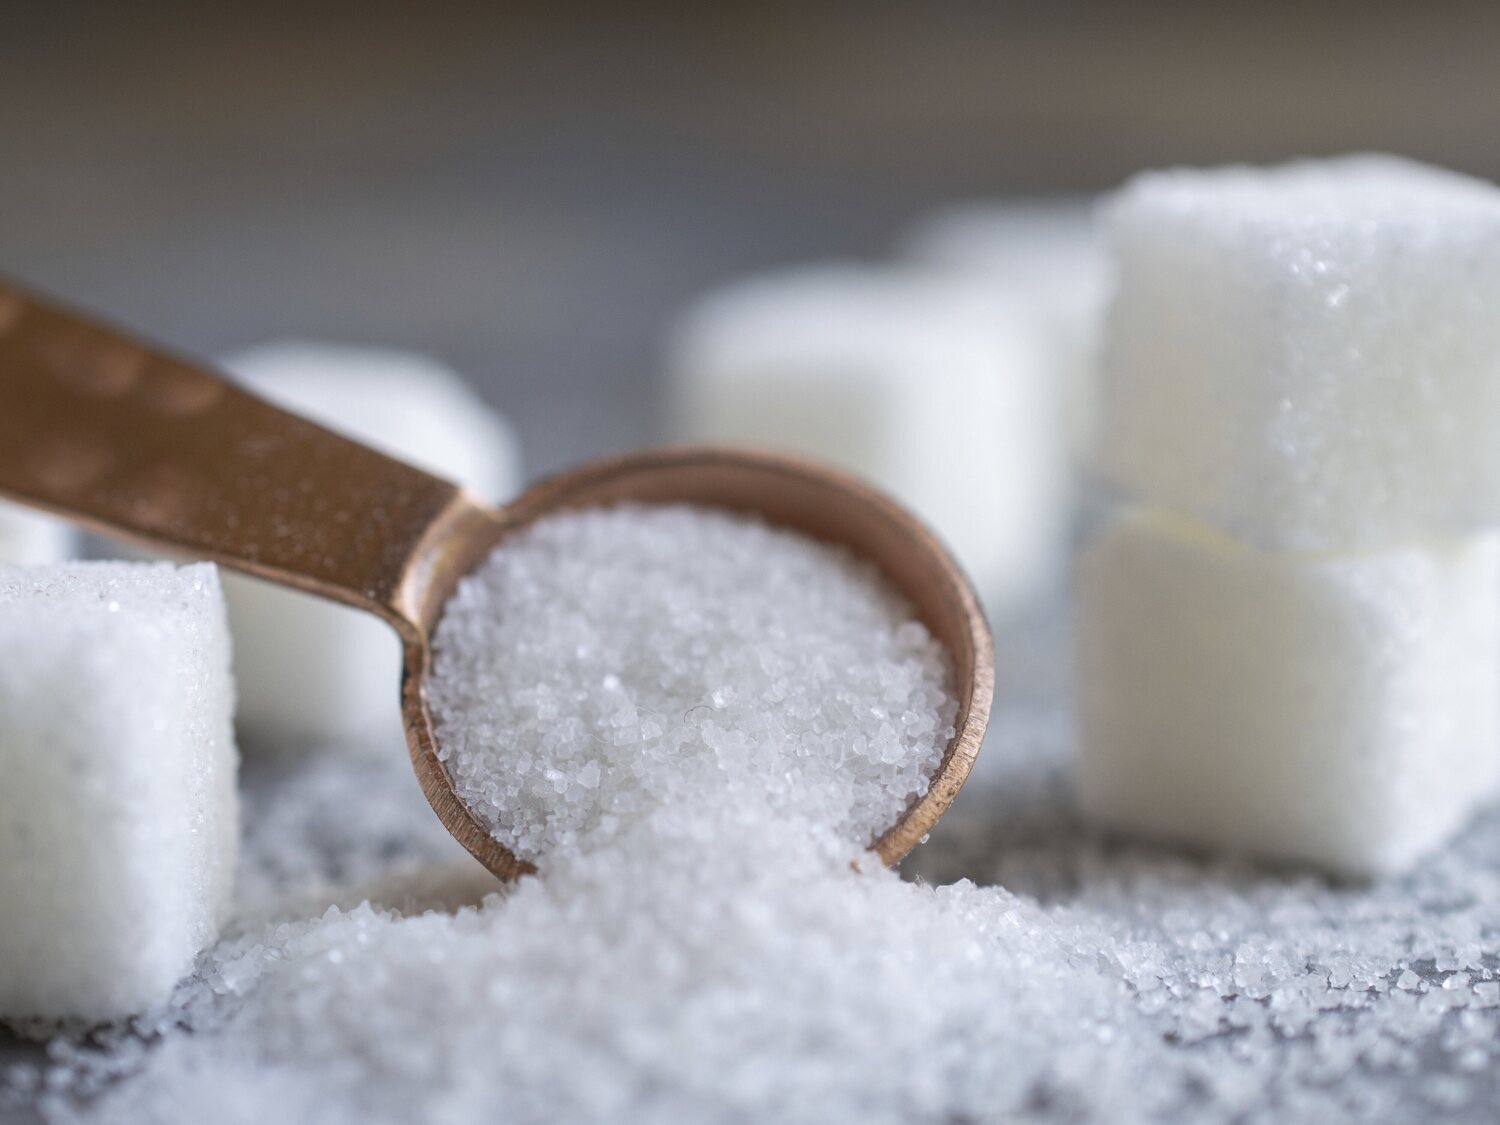 Si quieres eliminar el azúcar de tu cuerpo rápidamente sigue estos consejos